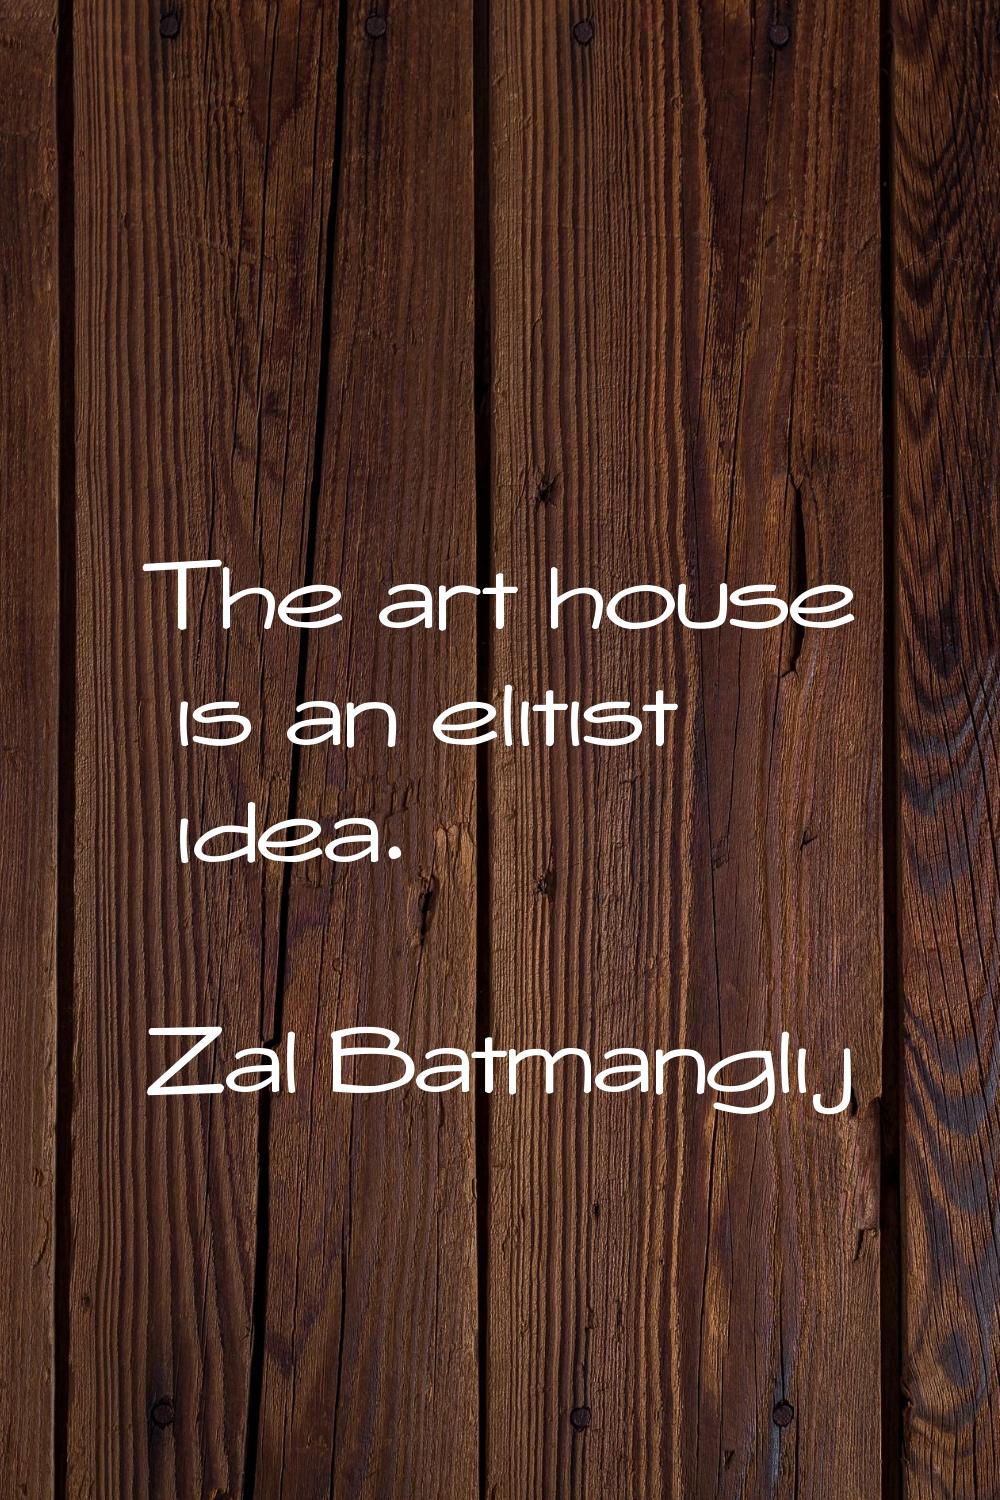 The art house is an elitist idea.